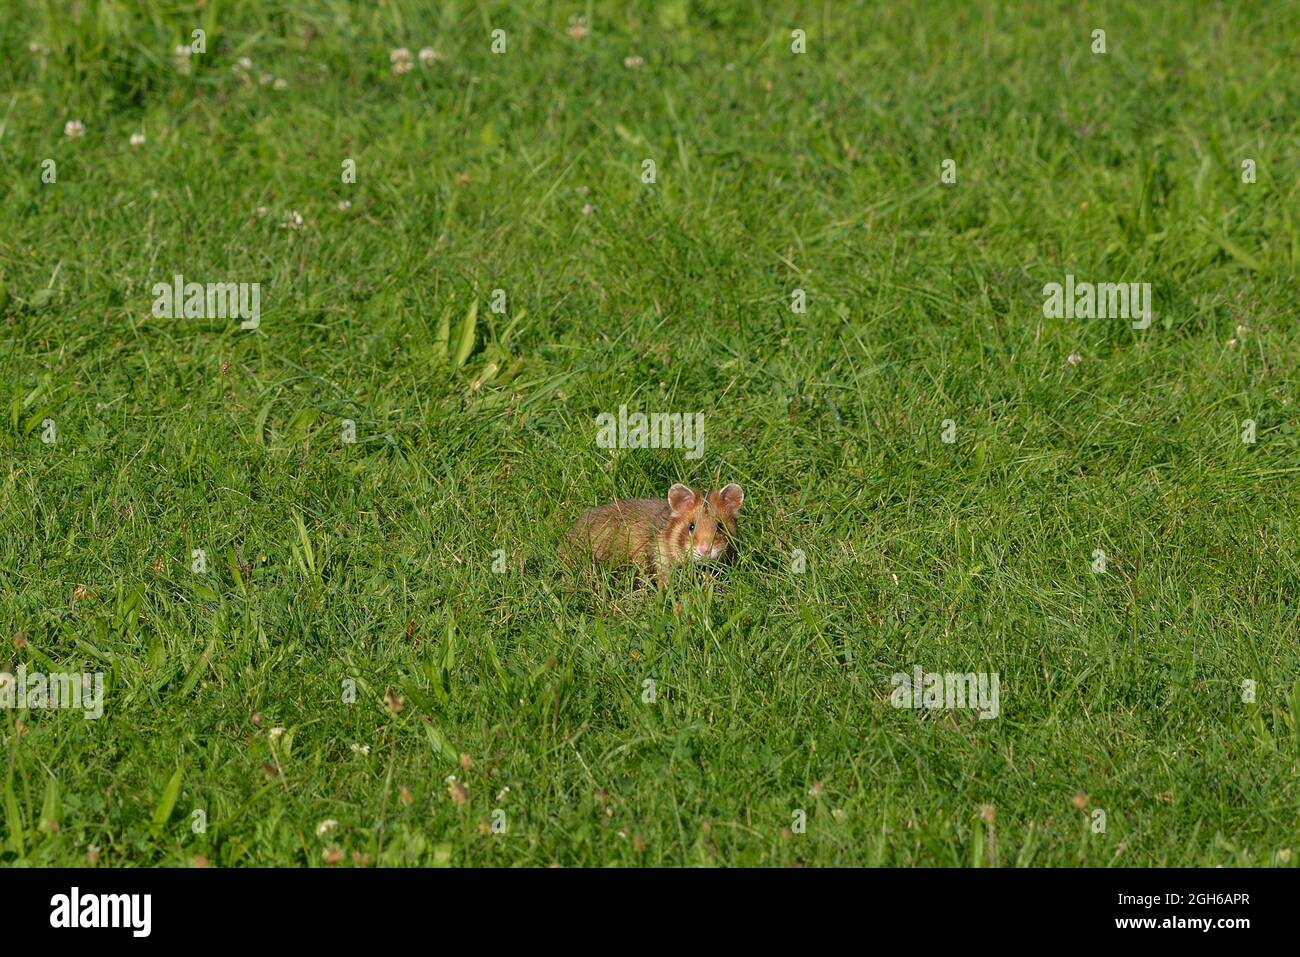 Vienne, Autriche. Le cimetière central de Vienne. Hamster européen (Cricetus cricetus) au cimetière central Banque D'Images